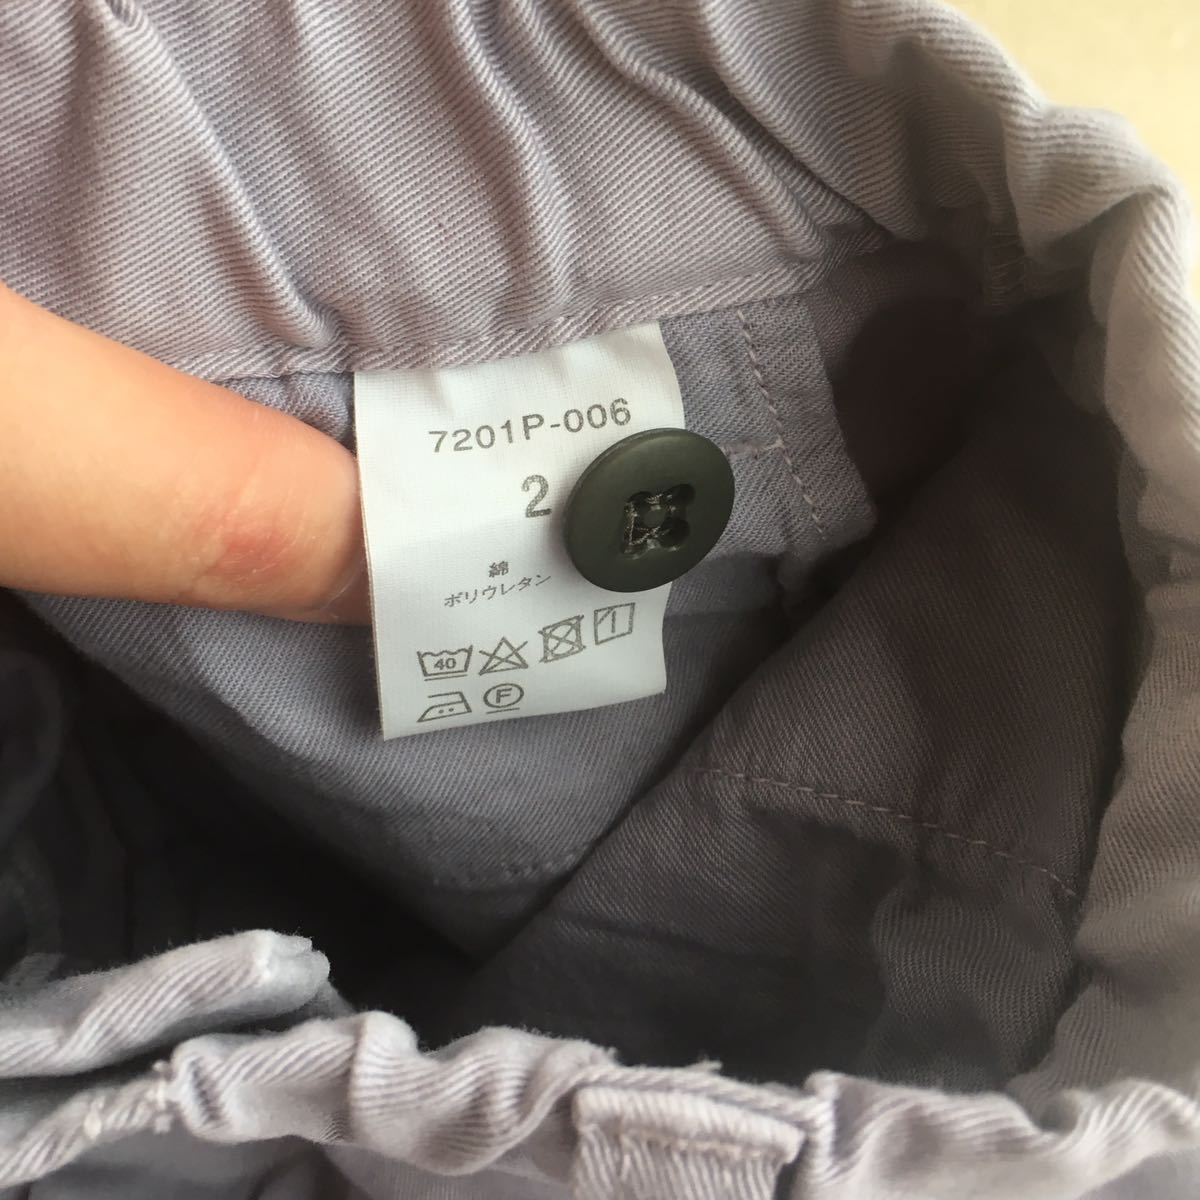 1 раз "надеты" NATURAL LAUNDRY Natural Laundry tsu il стрейч узкие брюки размер 2 голубой серый обычная цена,12.980 иен сделано в Японии 